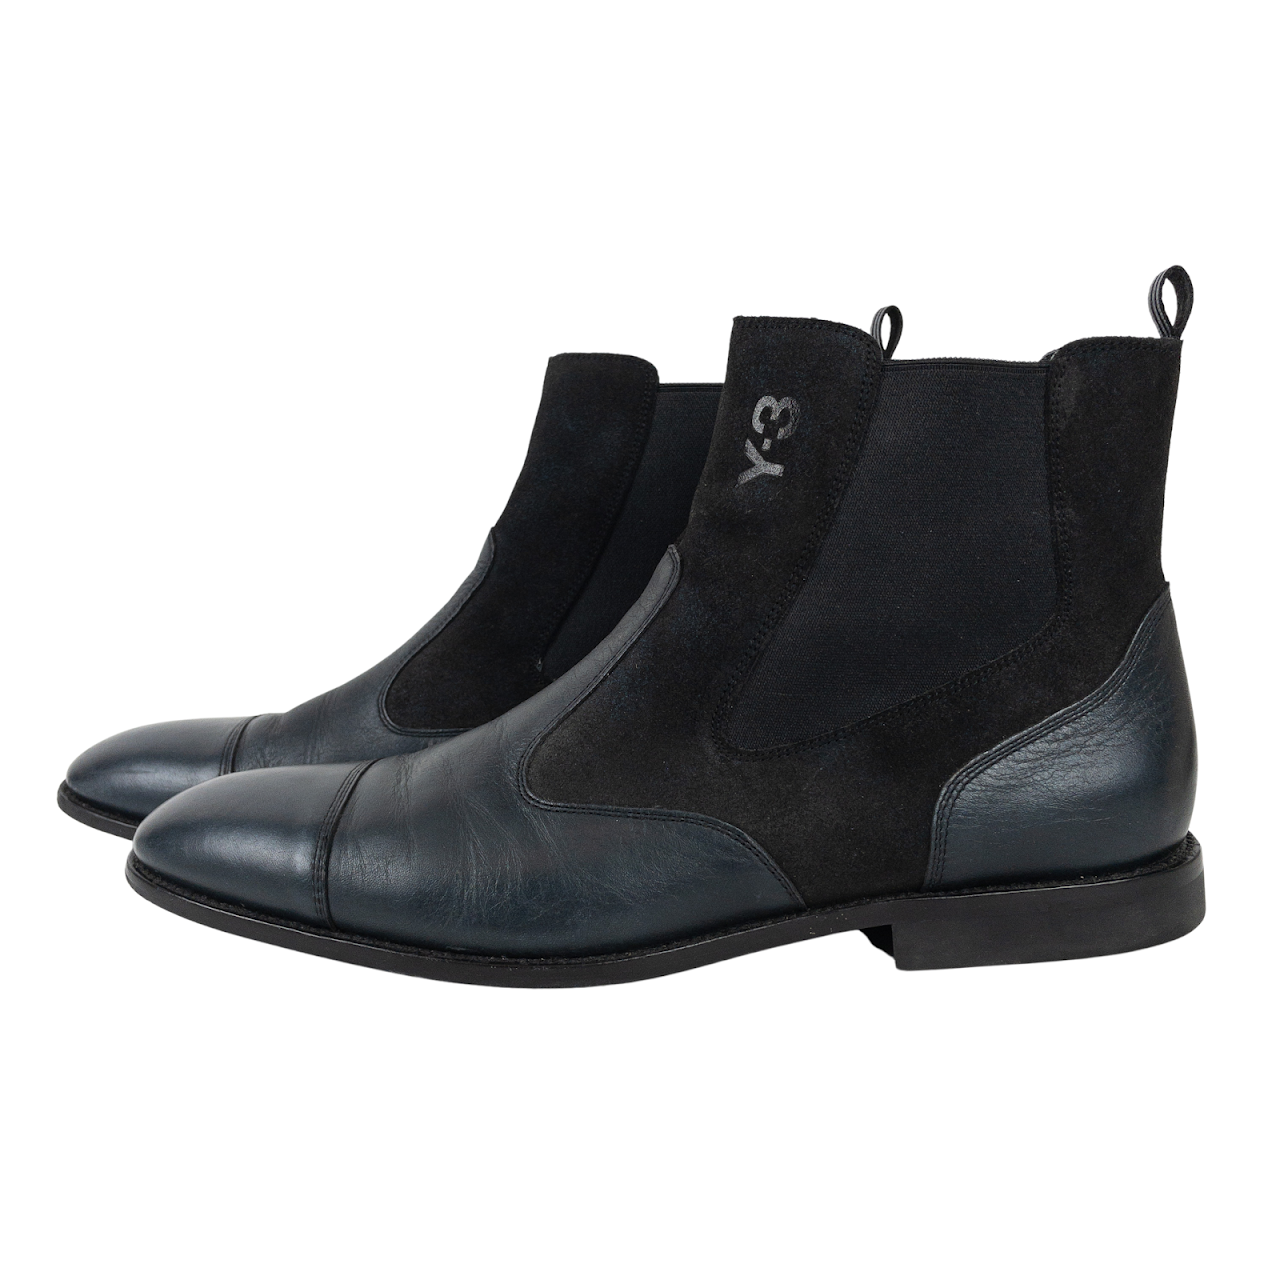 Yohji Yamamoto Y-3 Suede & Leather Chelsea Boots